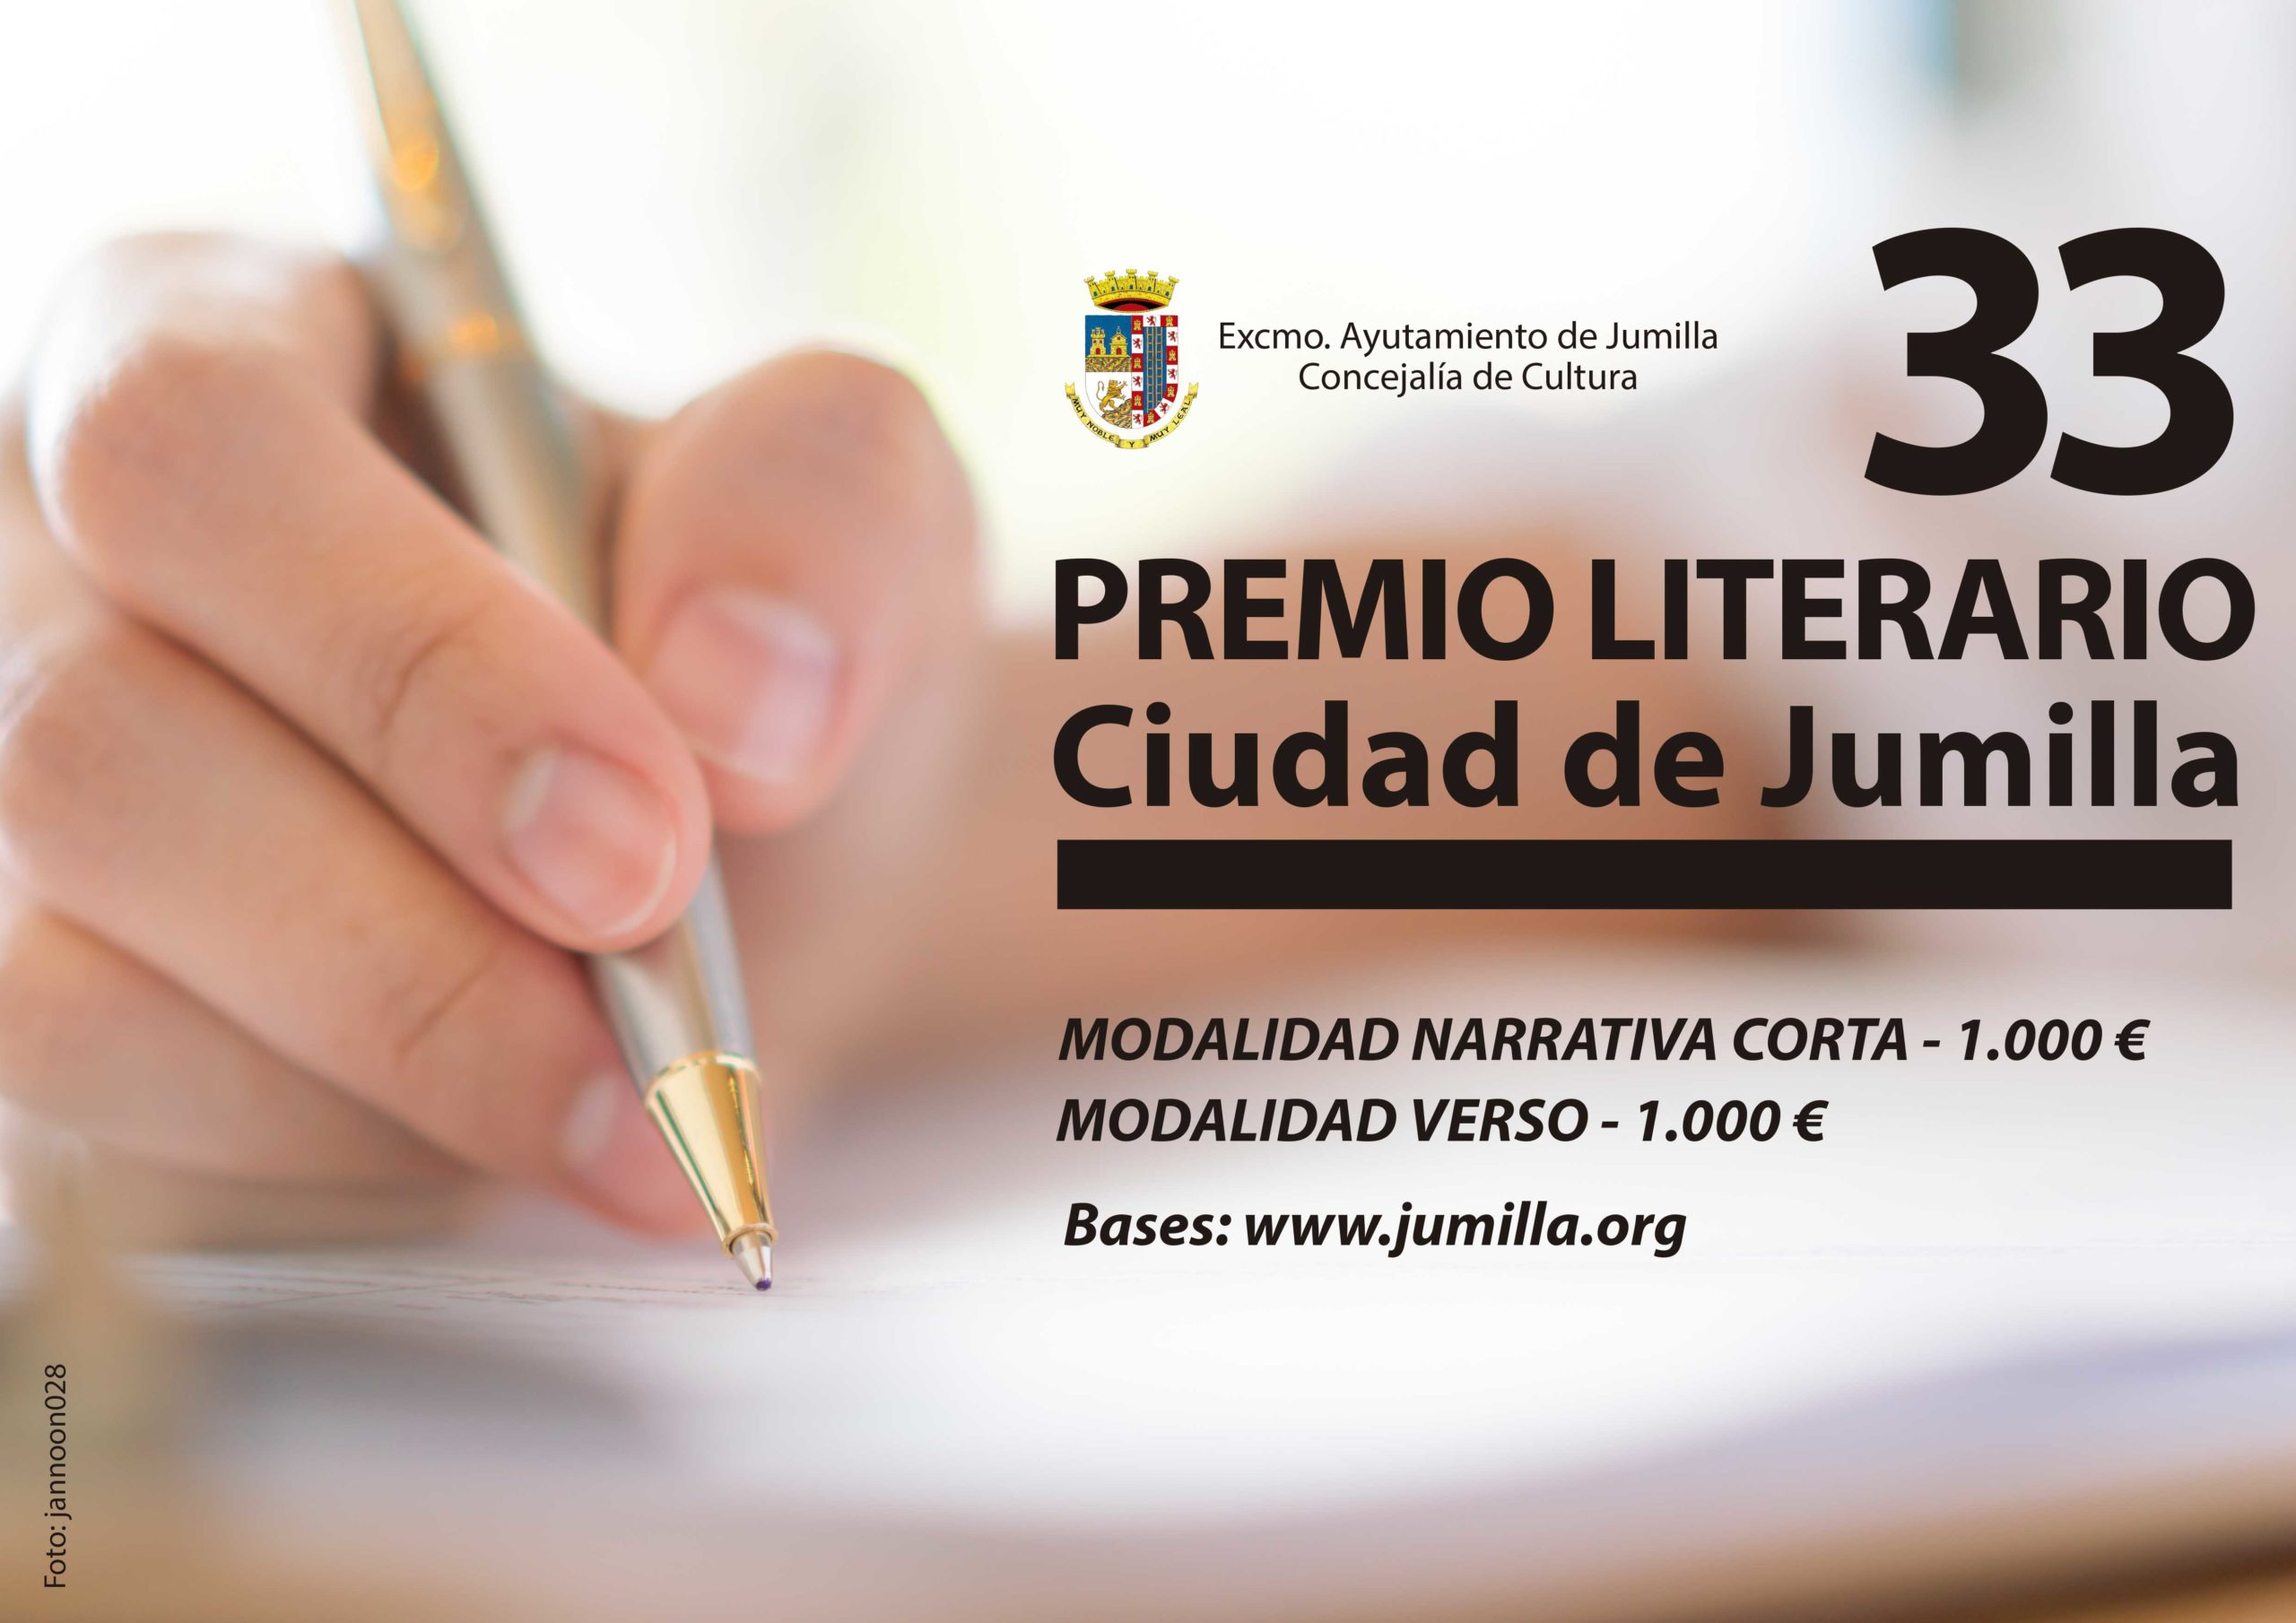 Hasta el 12 de enero se pueden presentar obras al Premio Literario